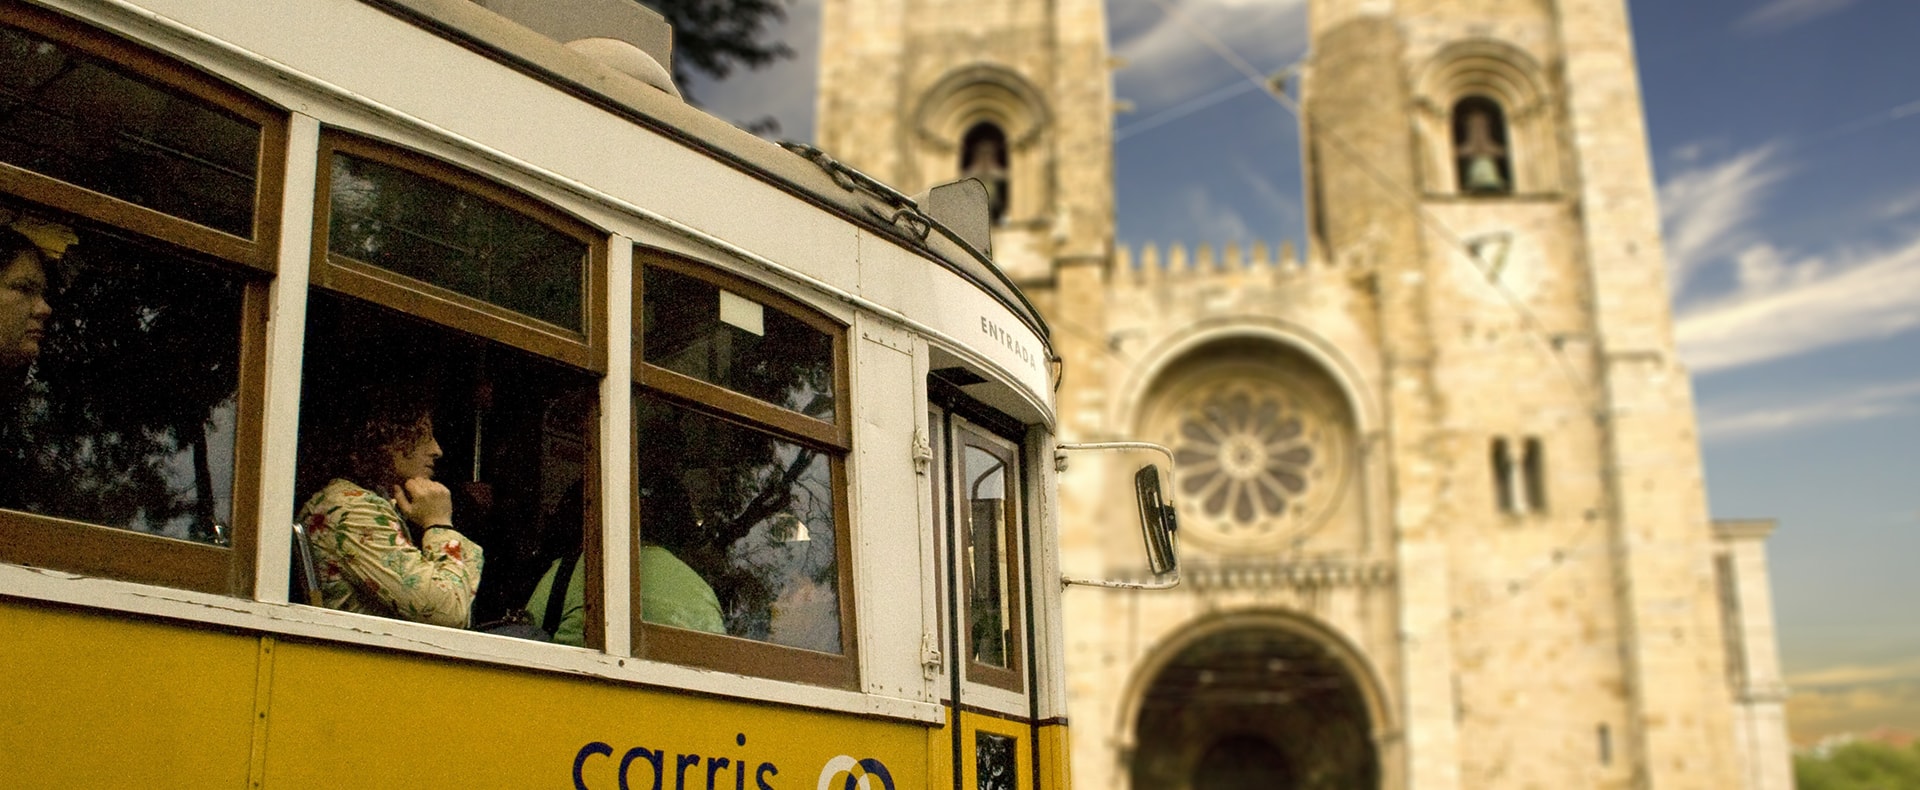 Se Cathedral, Lisbon, Portugal